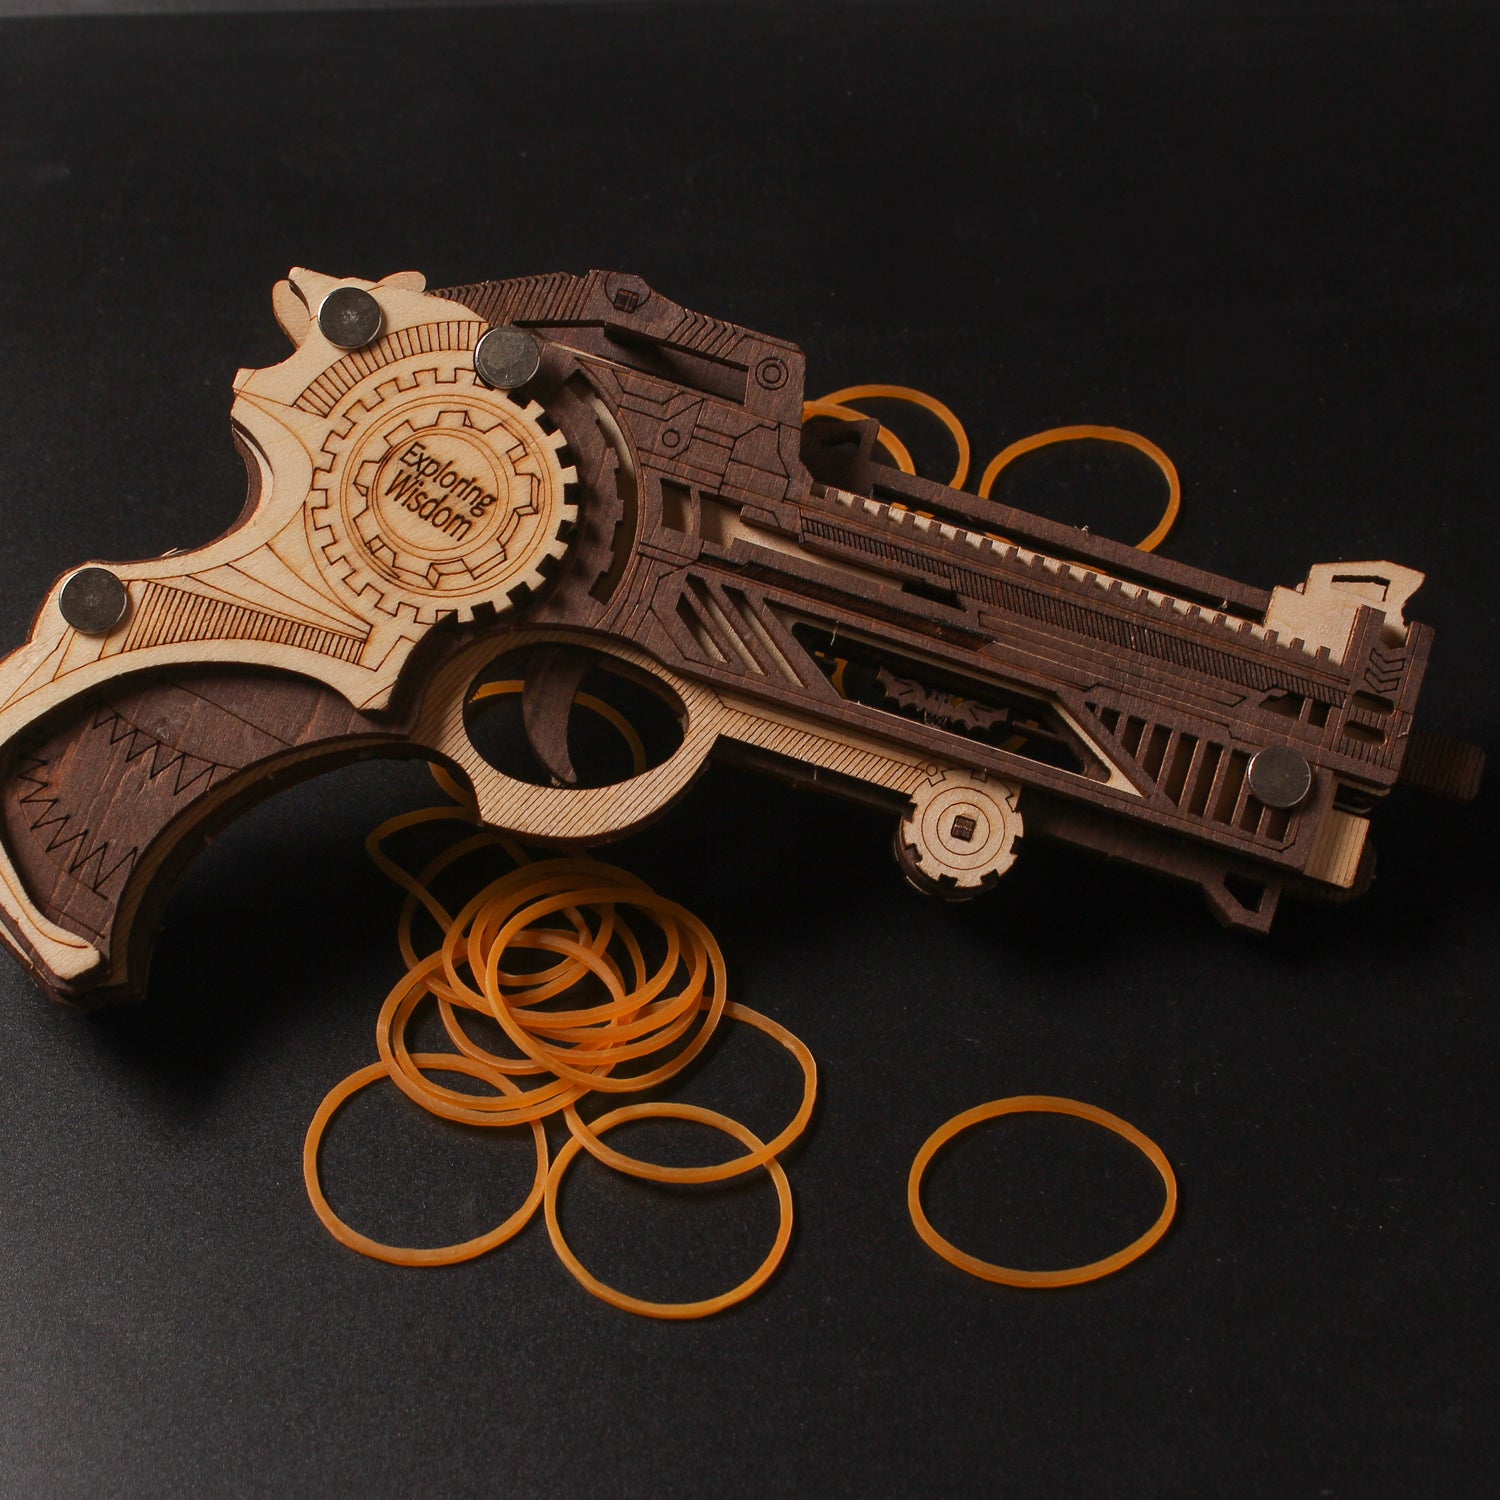 TSZH 008 DIY Guns Kit |Birthday Gift | Hobby